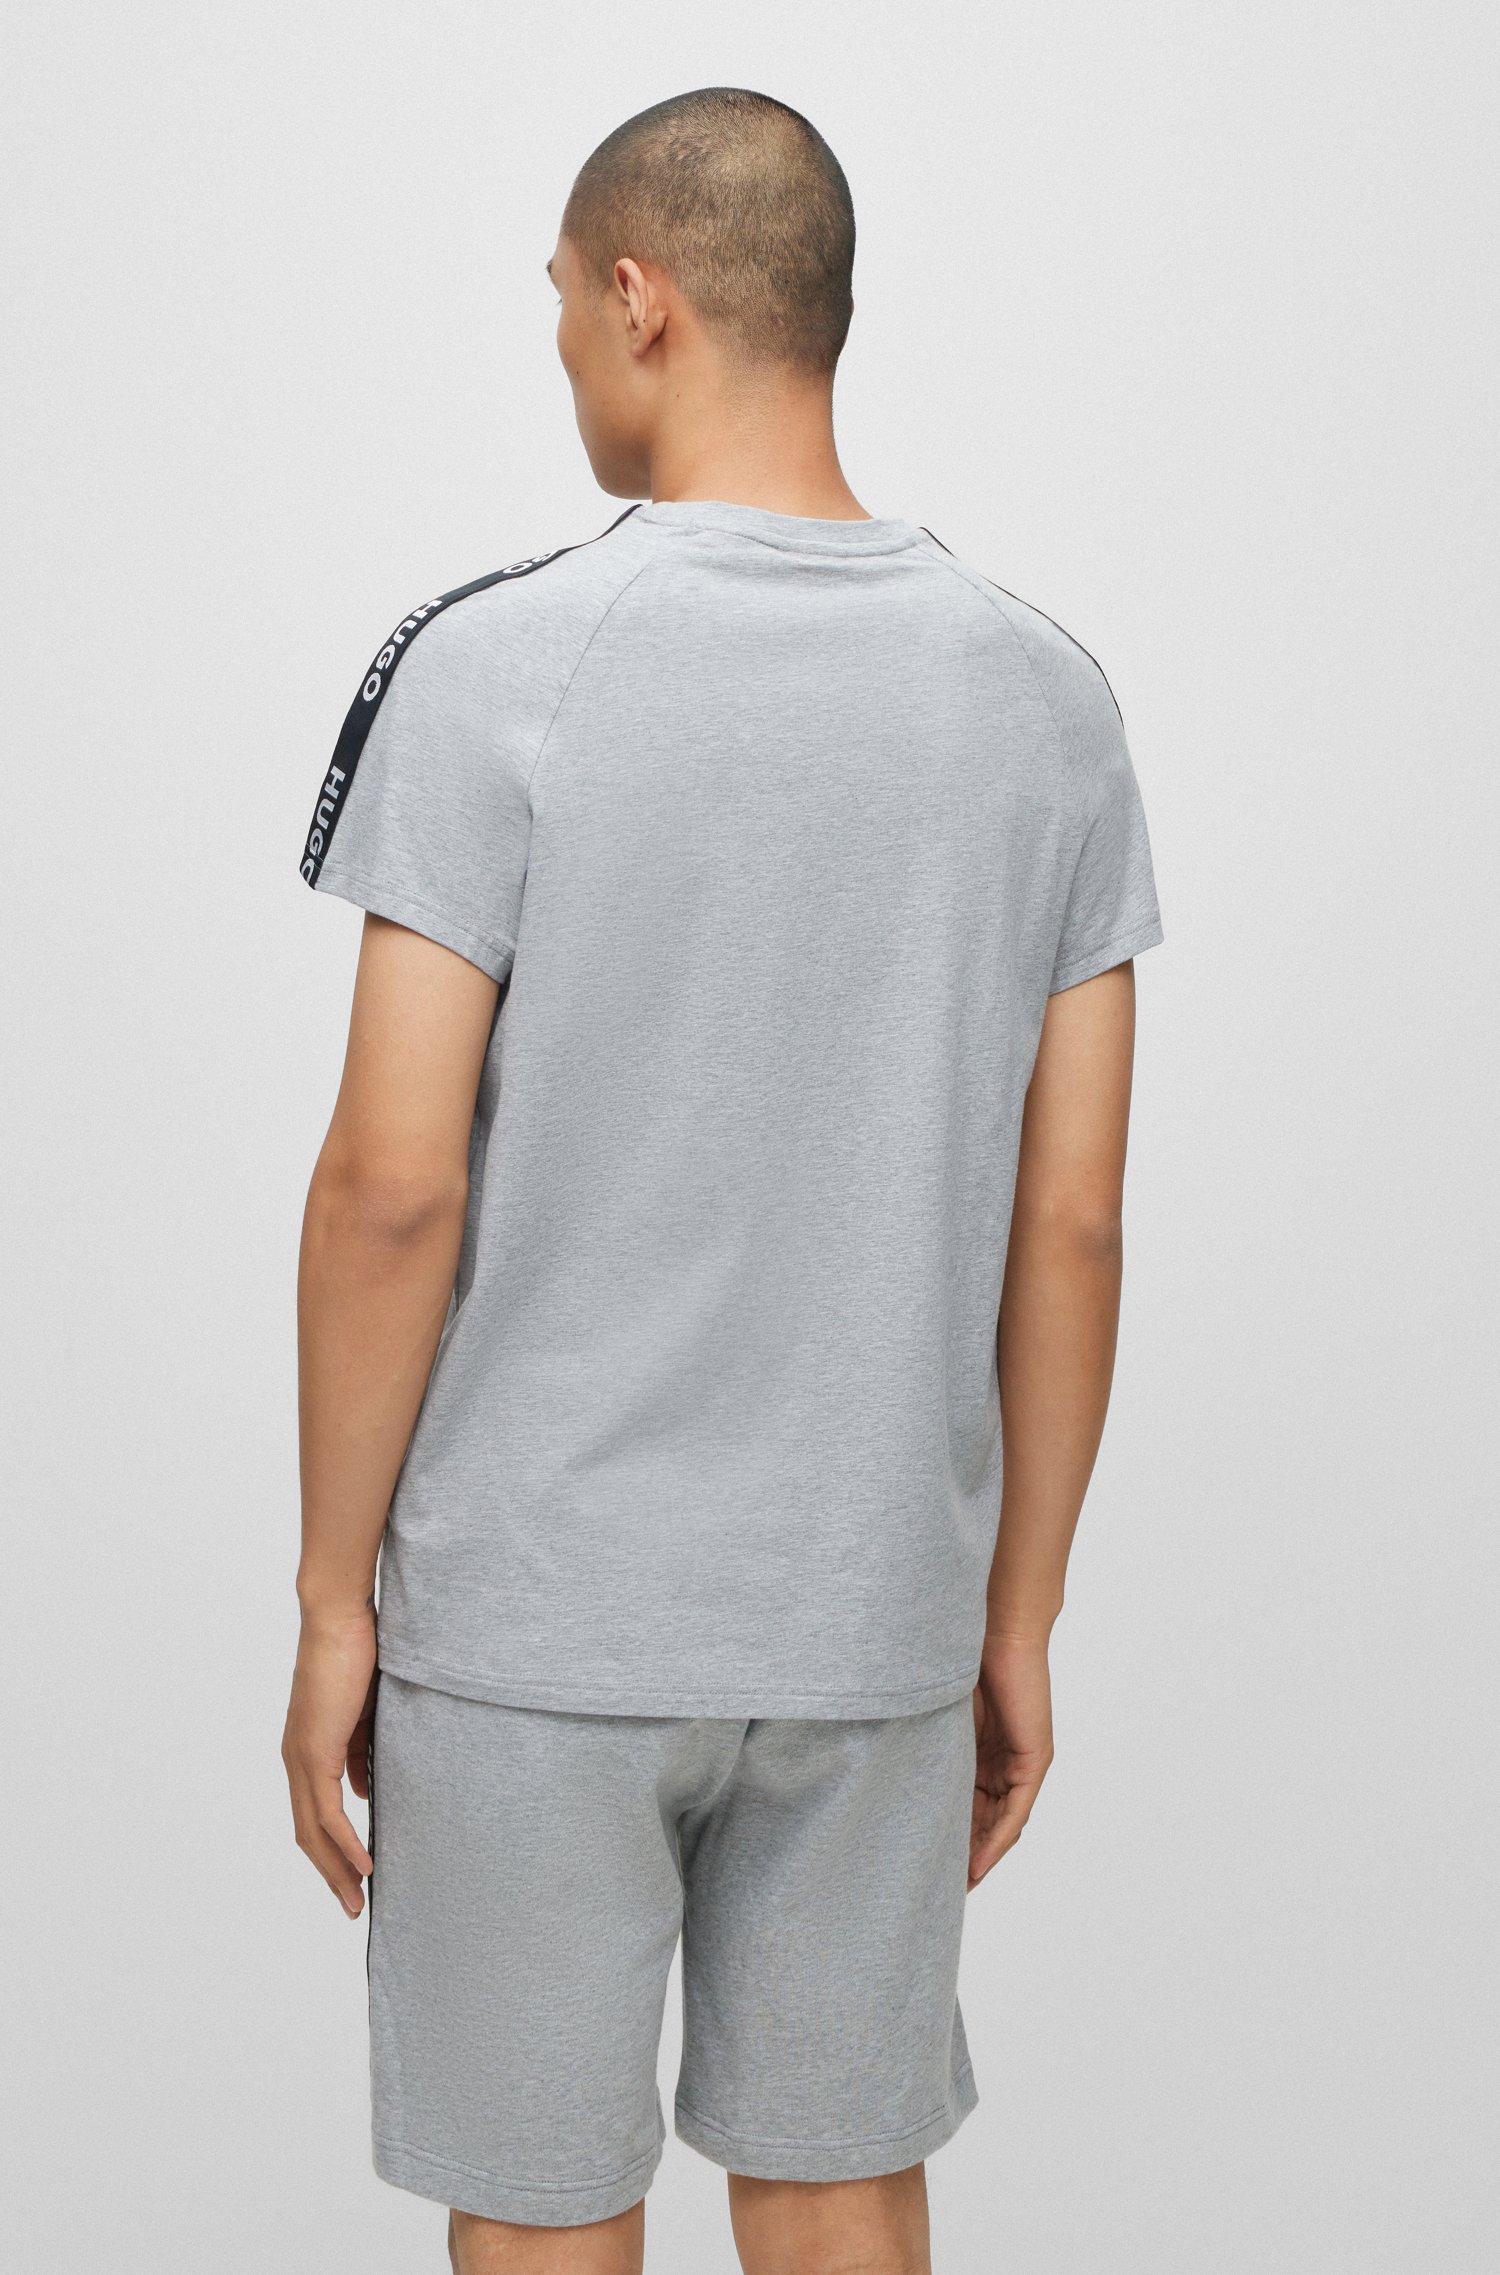 Camiseta relaxed fit de algodón elástico con cinta logos